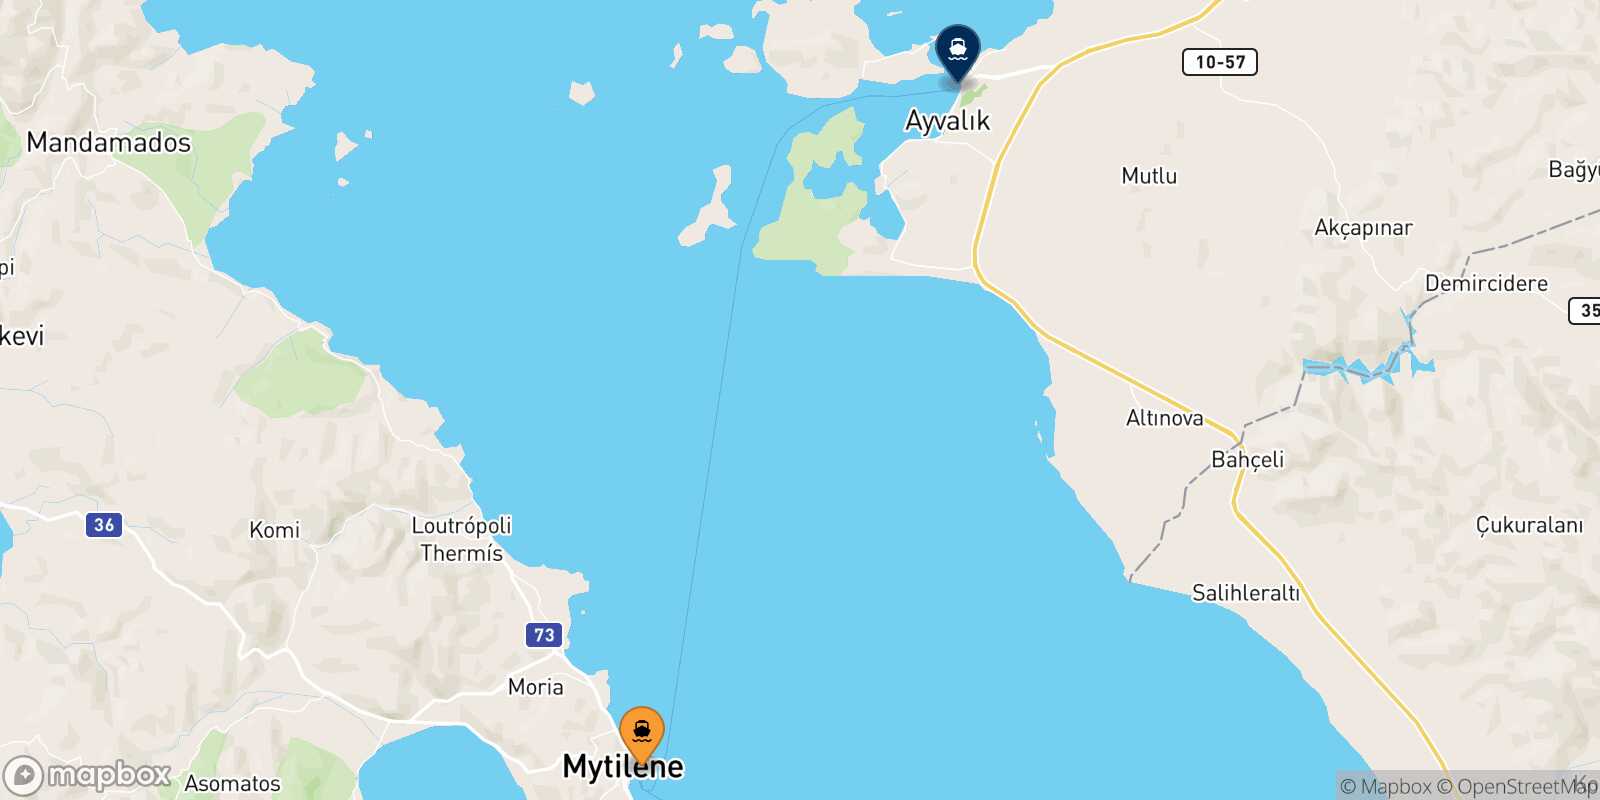 Mappa dei porti collegati con  Ayvalik